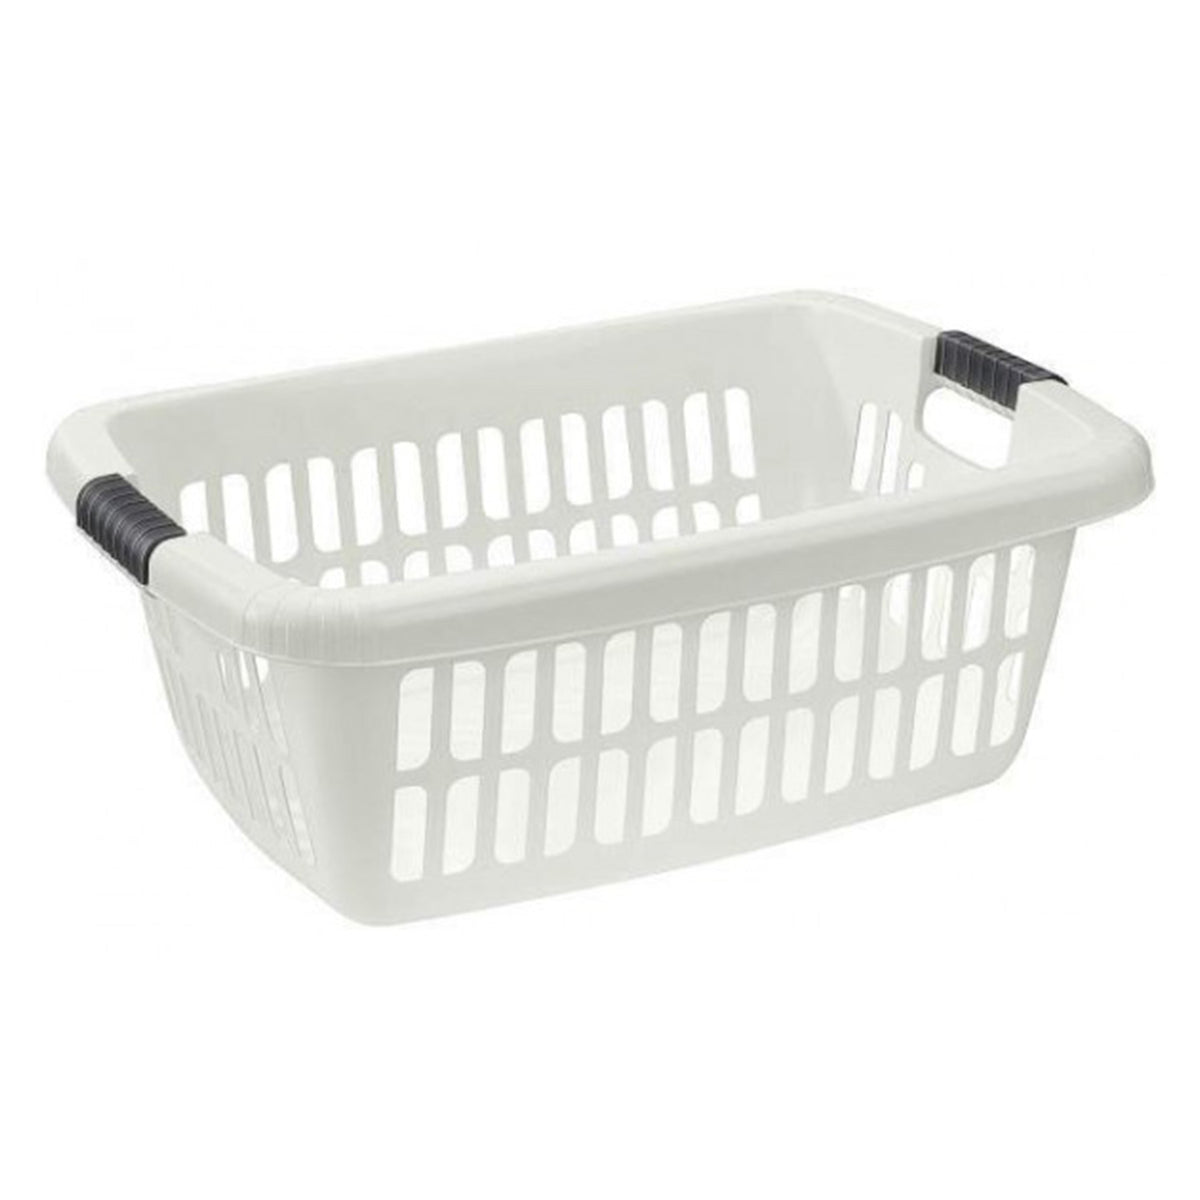 Laundry basket large Size: 65 x 44 x 24 cm